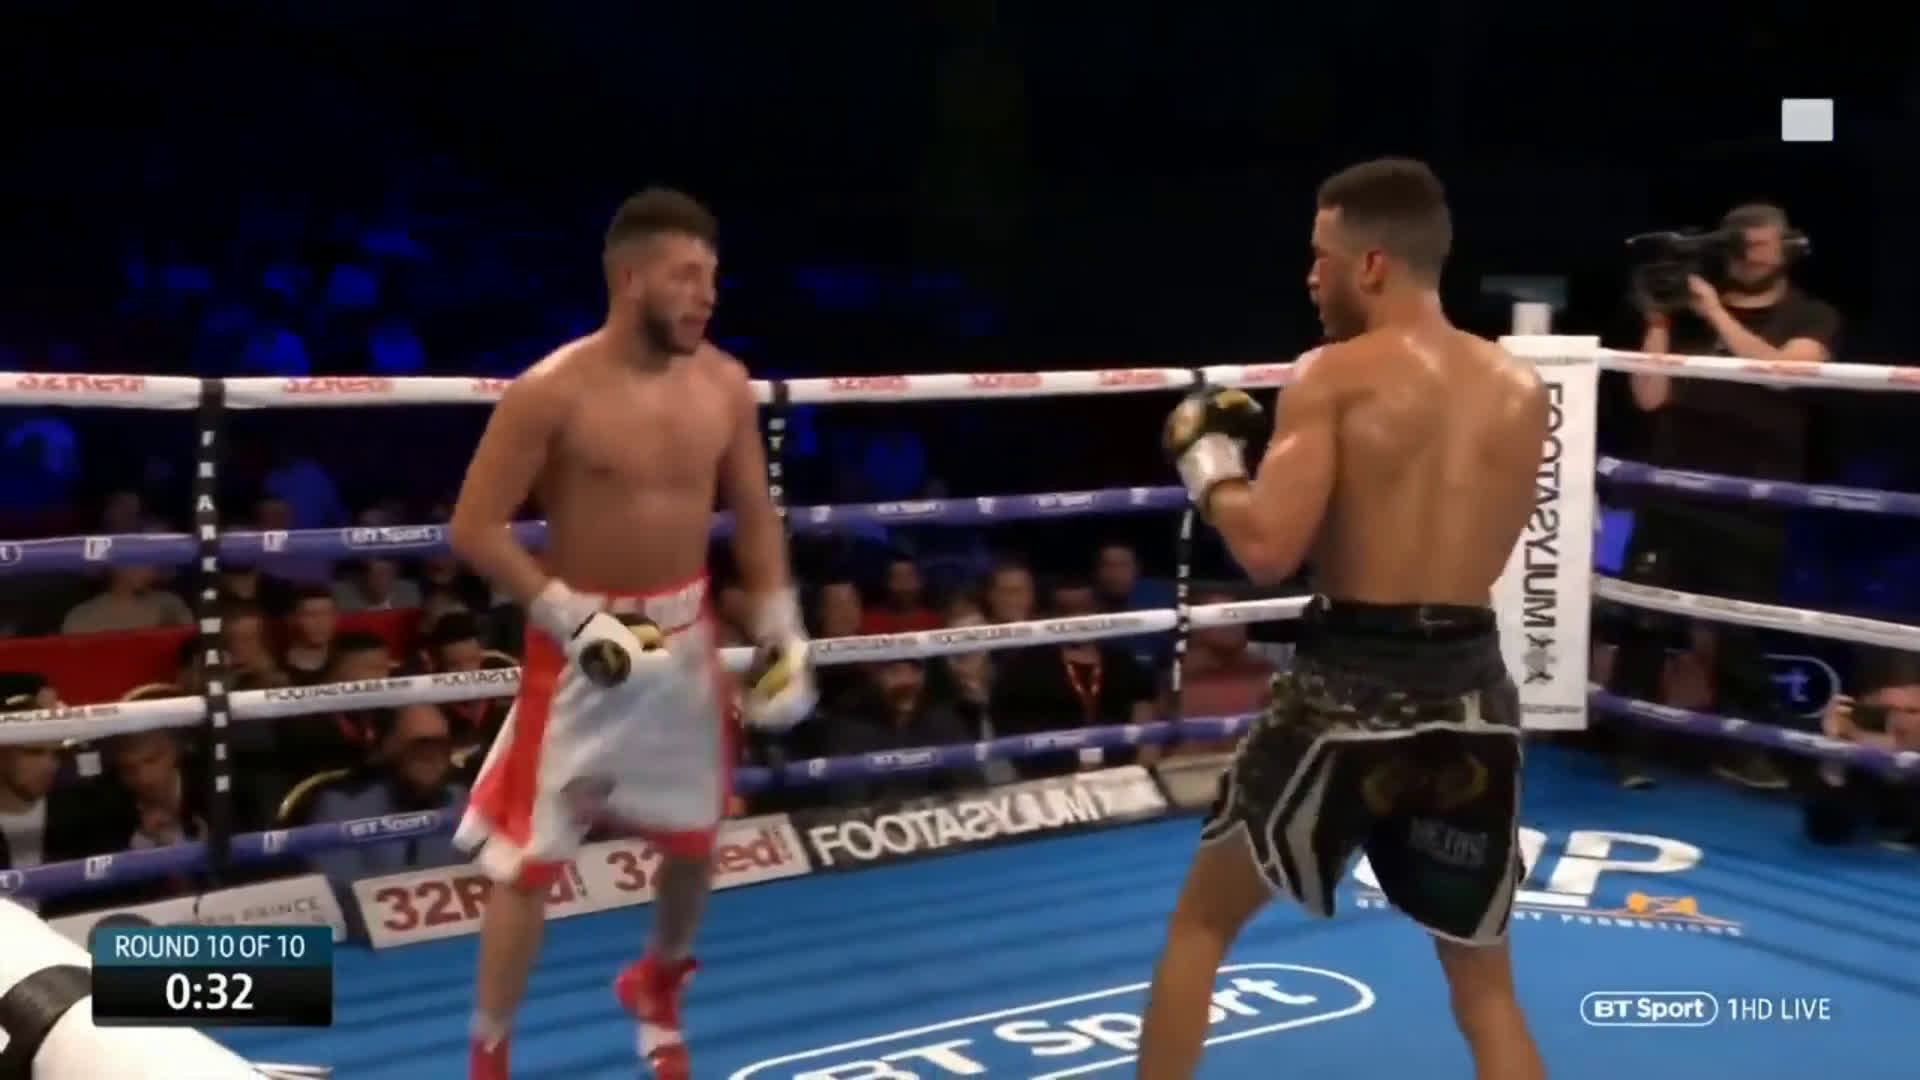 Arrogant boxer gets knocked out